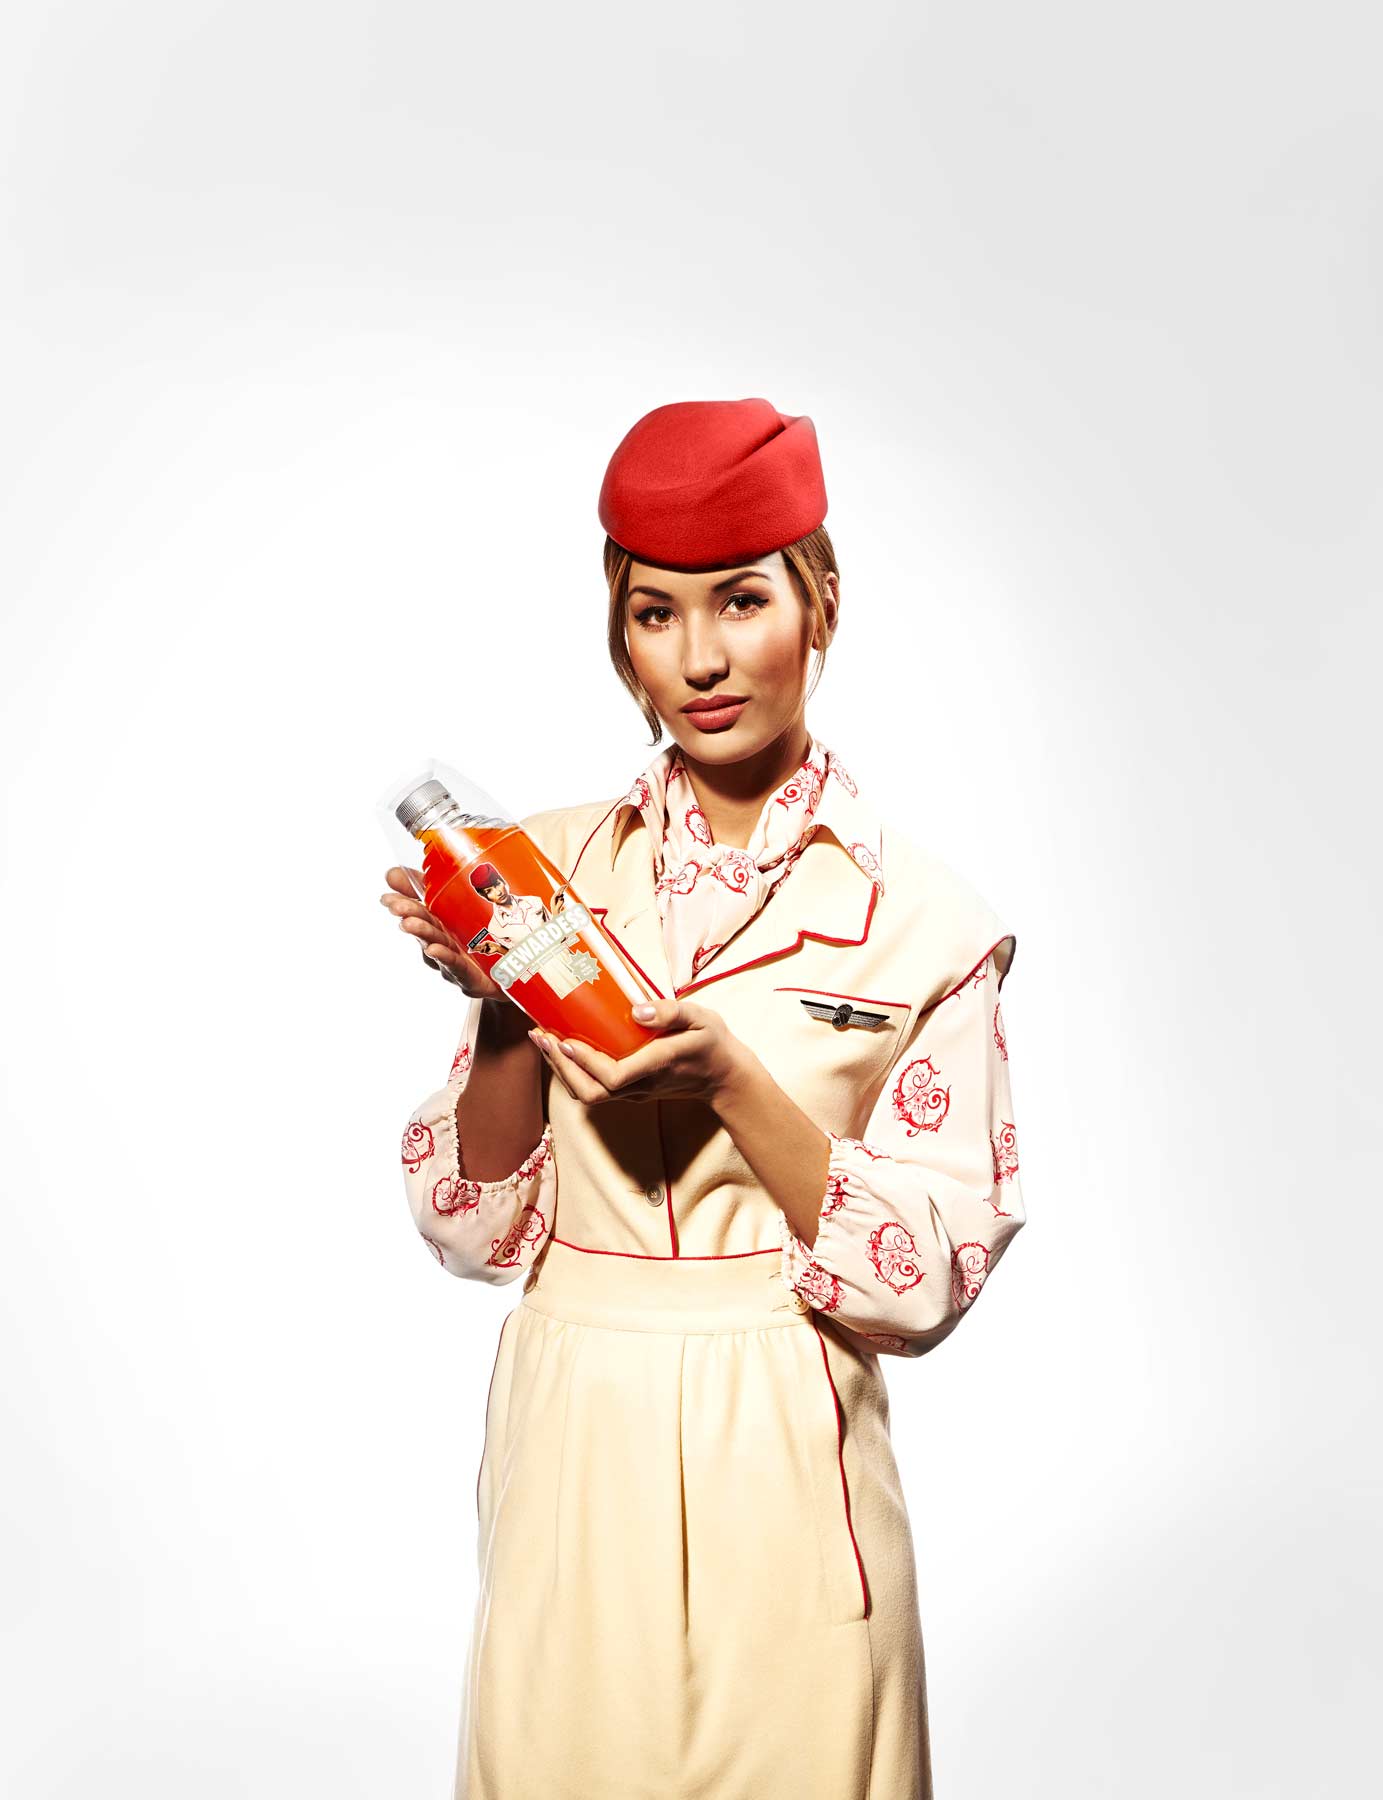 Stewardess martinaozeanien